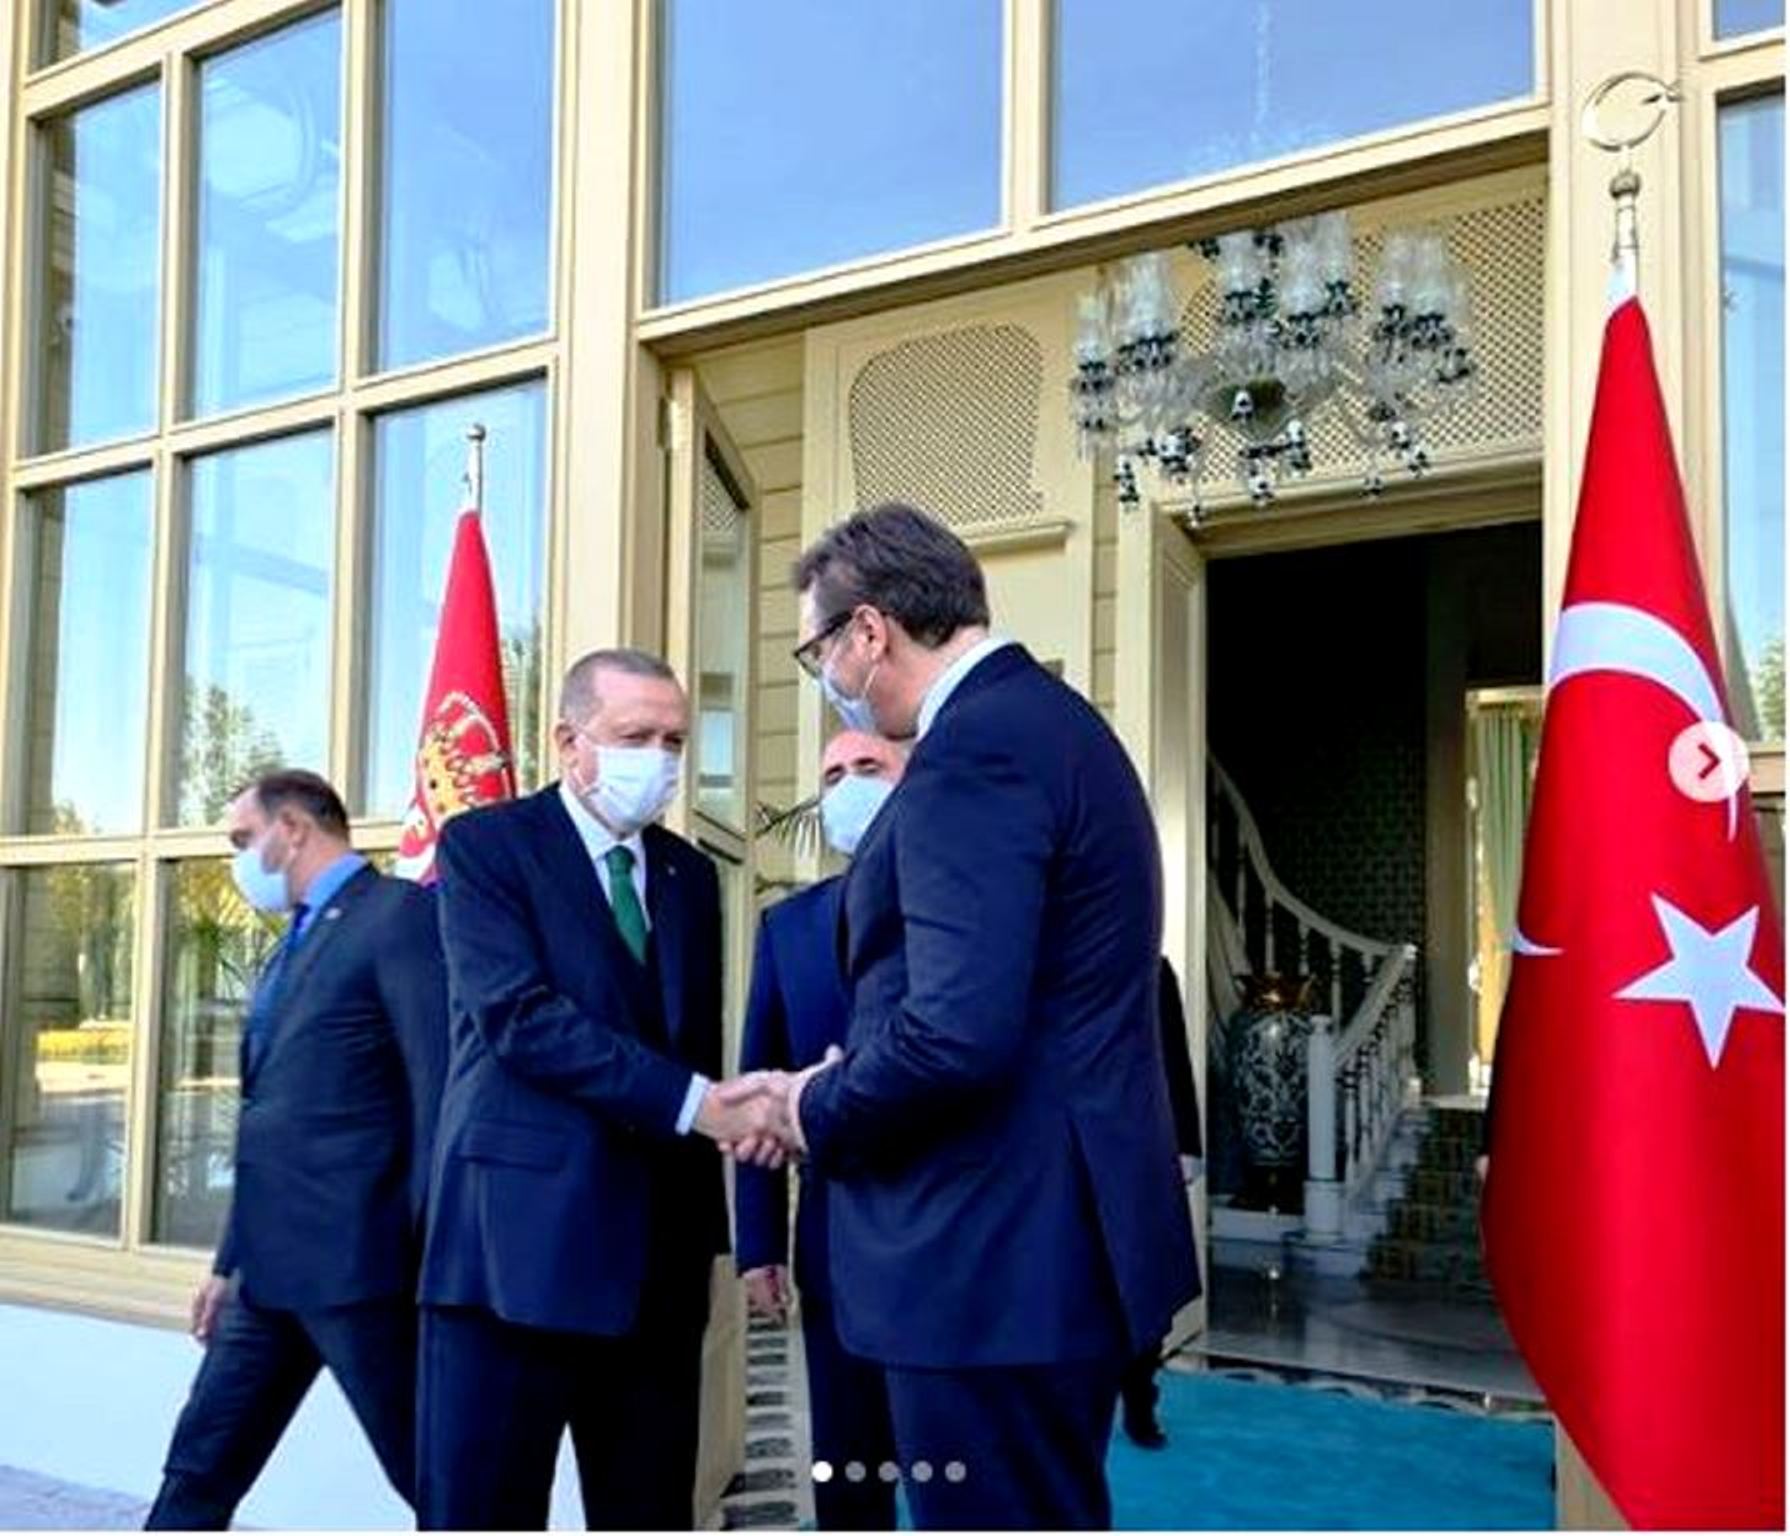 Πρόεδρος Σερβίας στη συνάντηση με Ερντογάν: Οι Έλληνες είναι φίλοι μας, αλλά εμείς έχουμε τα δικά μας συμφέροντα